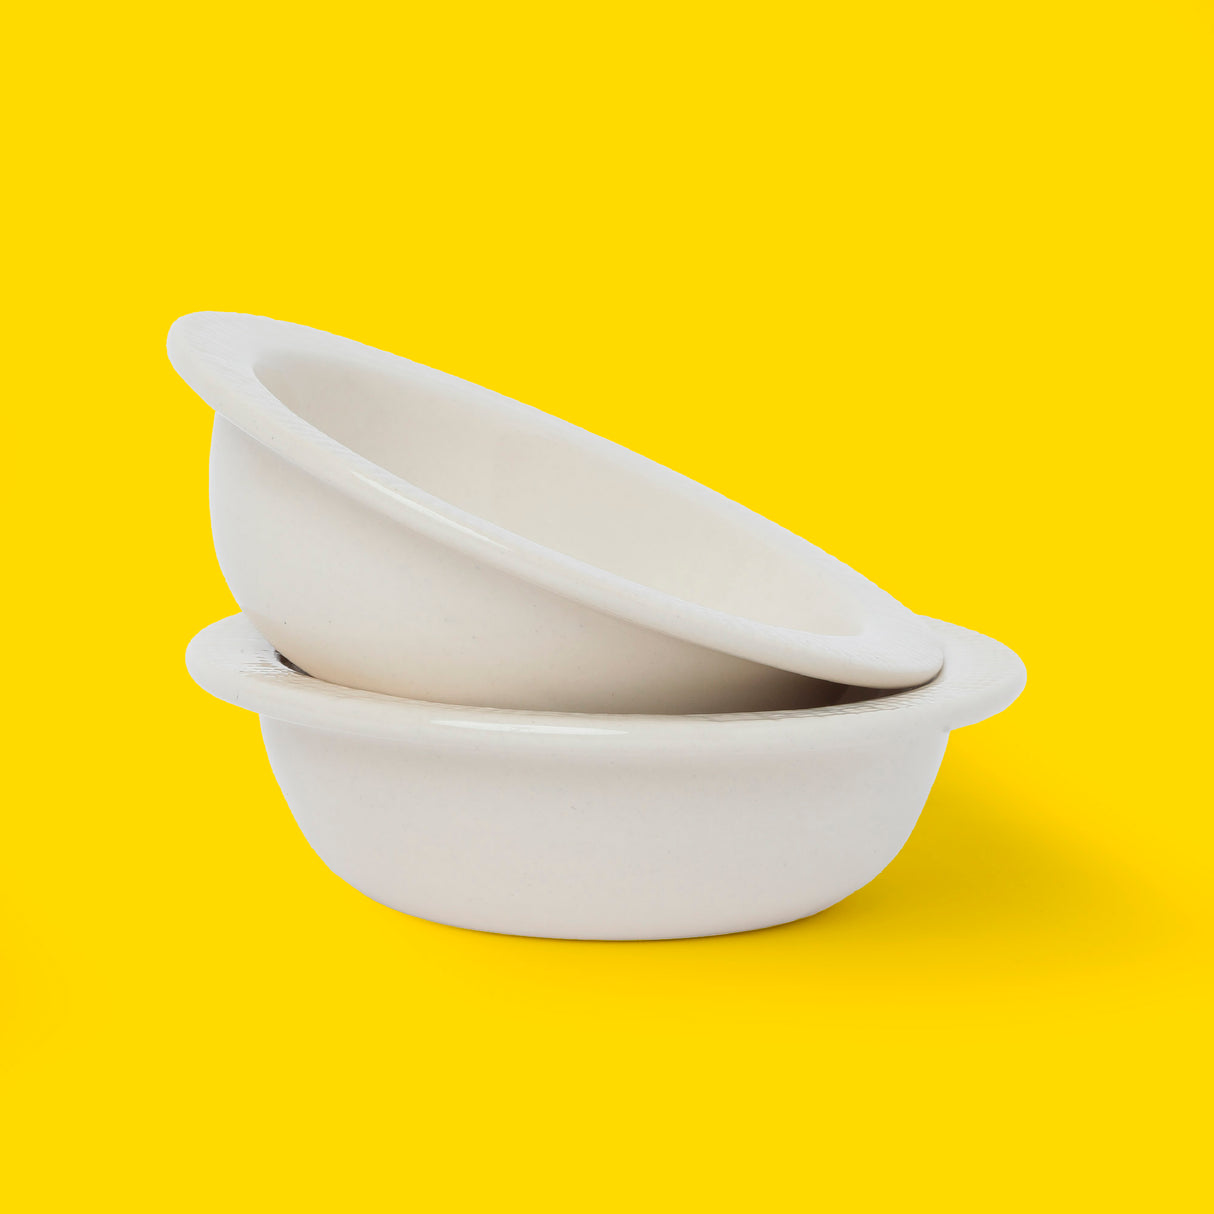 White bowls made of ceramic